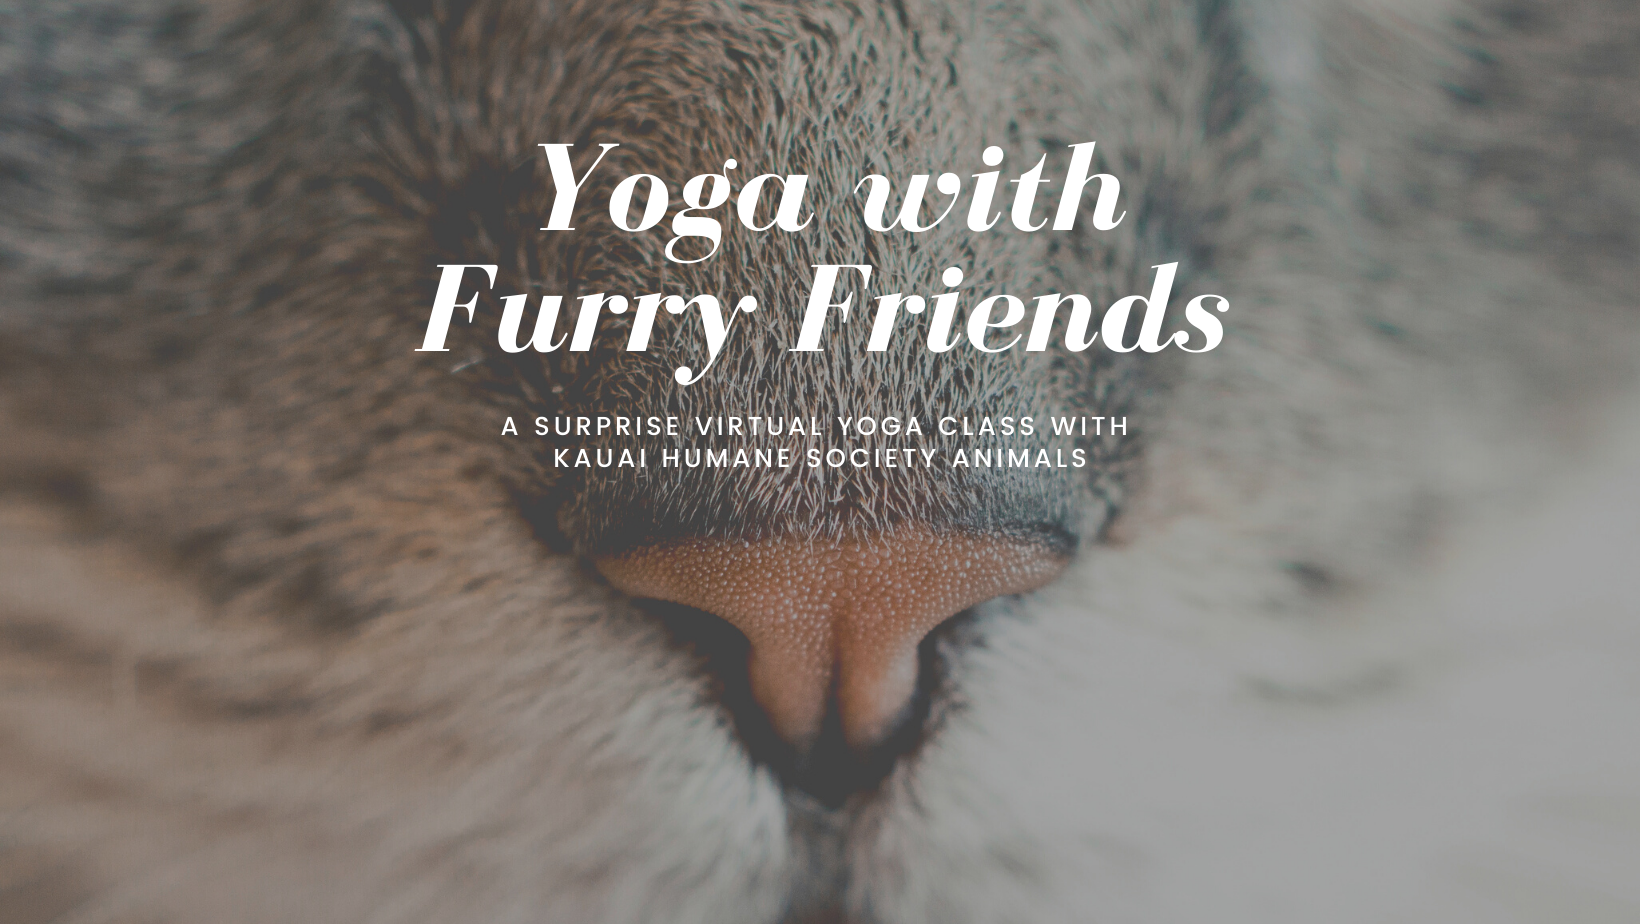 Join the Kauai Humane Society for virtual yoga!